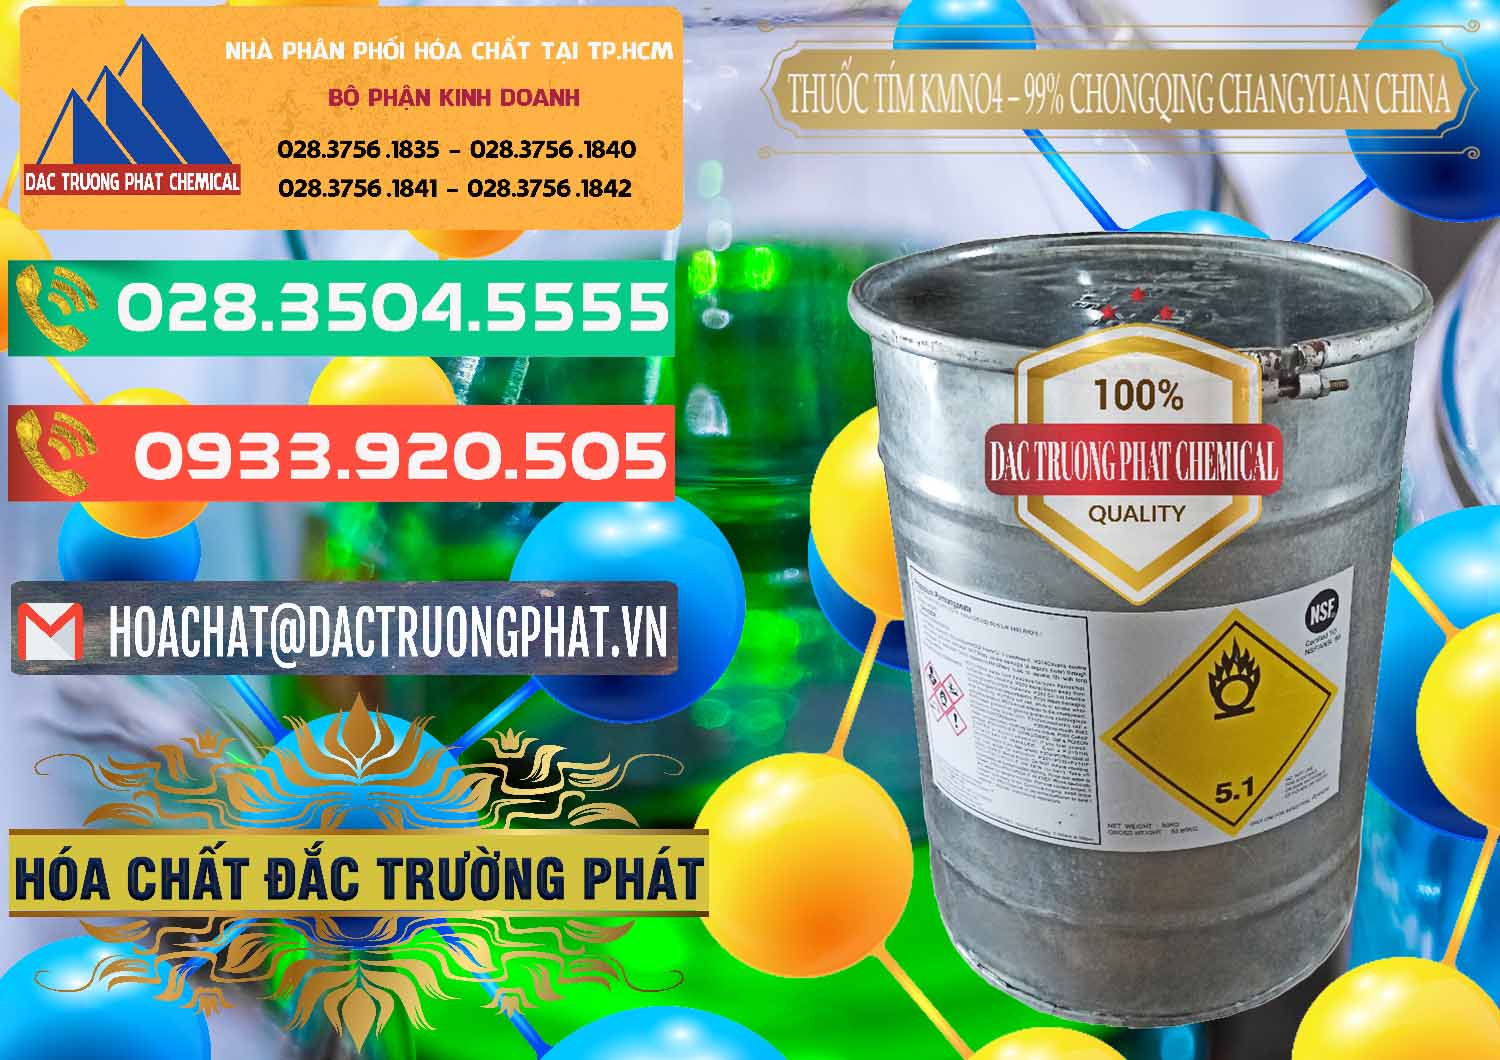 Cty chuyên cung ứng & bán Thuốc Tím – KMNO4 99% Chongqing Changyuan Trung Quốc China - 0166 - Chuyên phân phối ( cung ứng ) hóa chất tại TP.HCM - congtyhoachat.com.vn